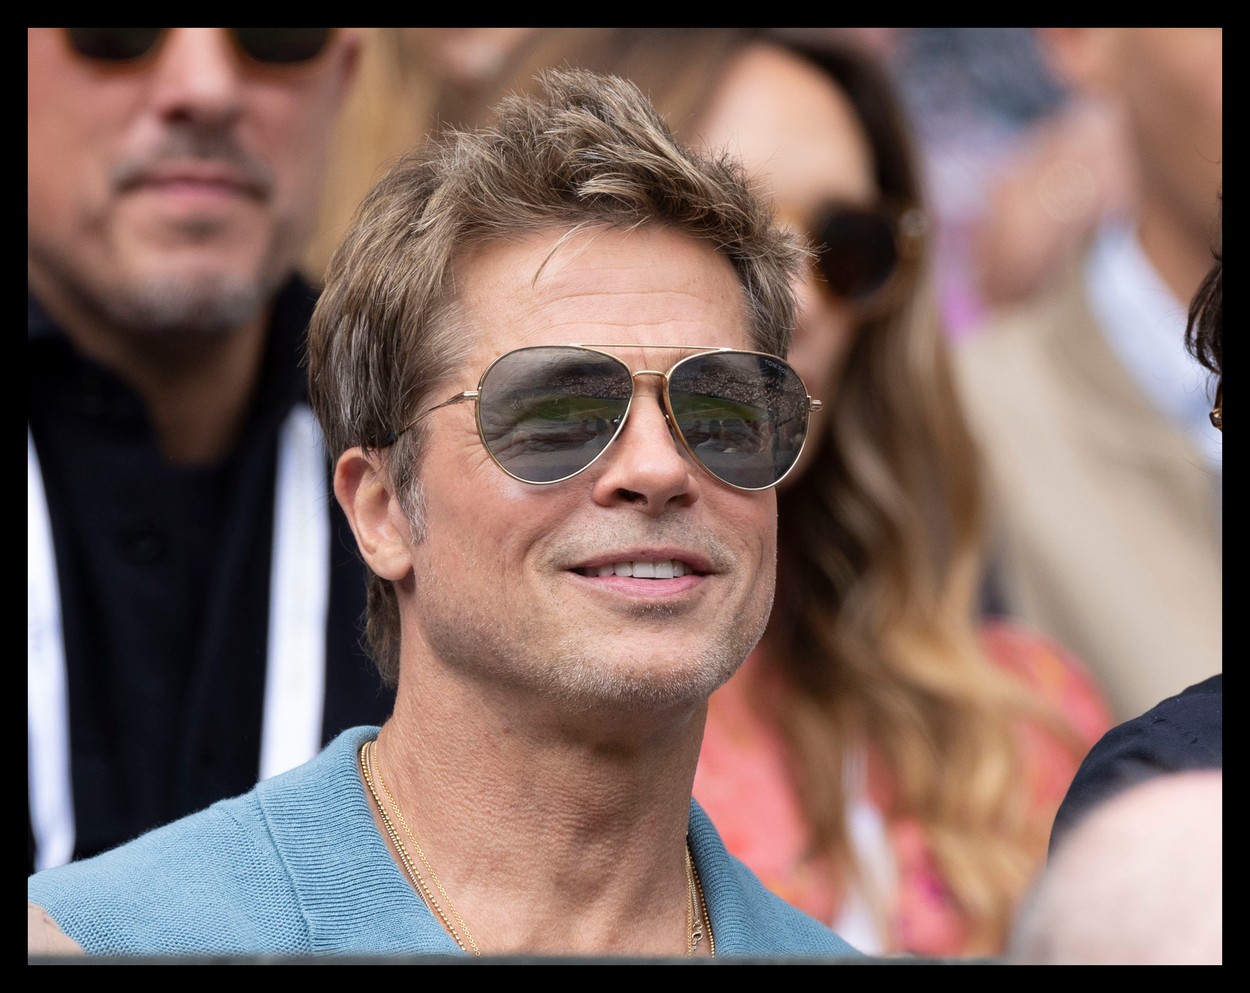 Îmbrăcat într-un tricou albastru marin și cu ochelari de soare, Brad Pitt zâmbește în timp ce se află în tribunele unui eveniment sportiv